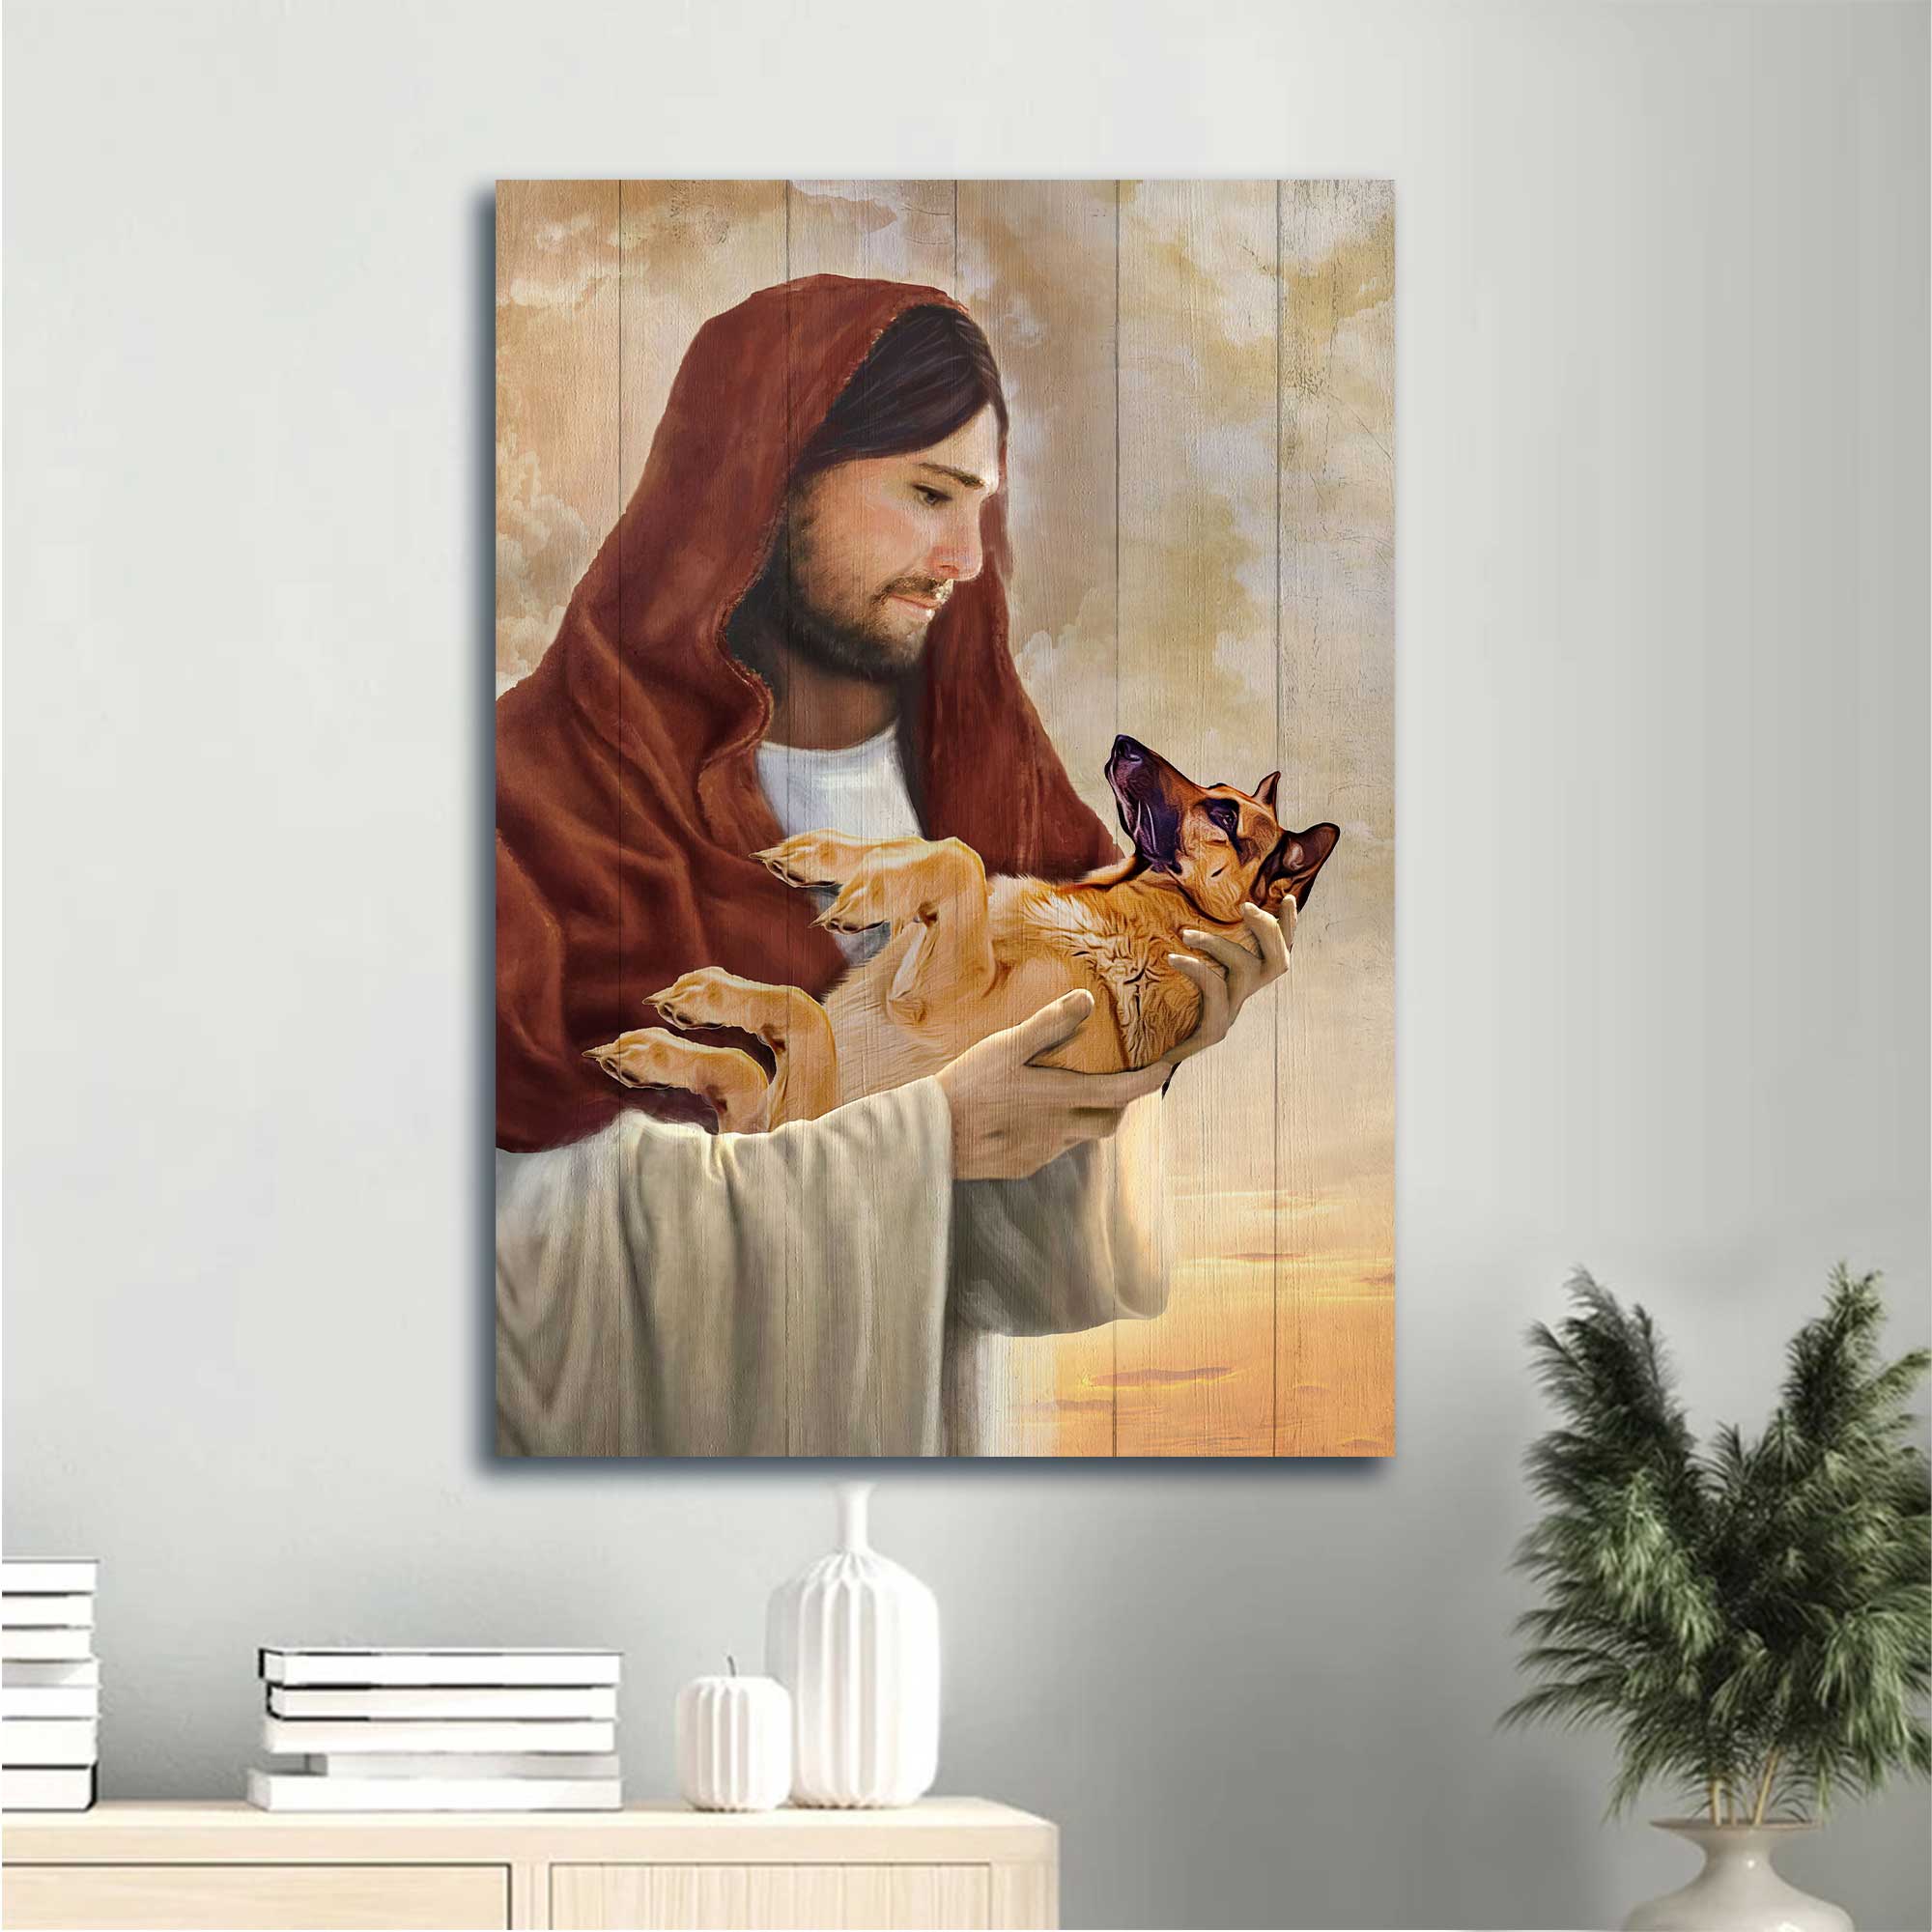 Jesus Portrait Canvas - Little German Shepherd, The world in his arm, Jesus artwork Portrait Canvas - Gift For Christian Portrait Canvas Prints, Christian Wall Art